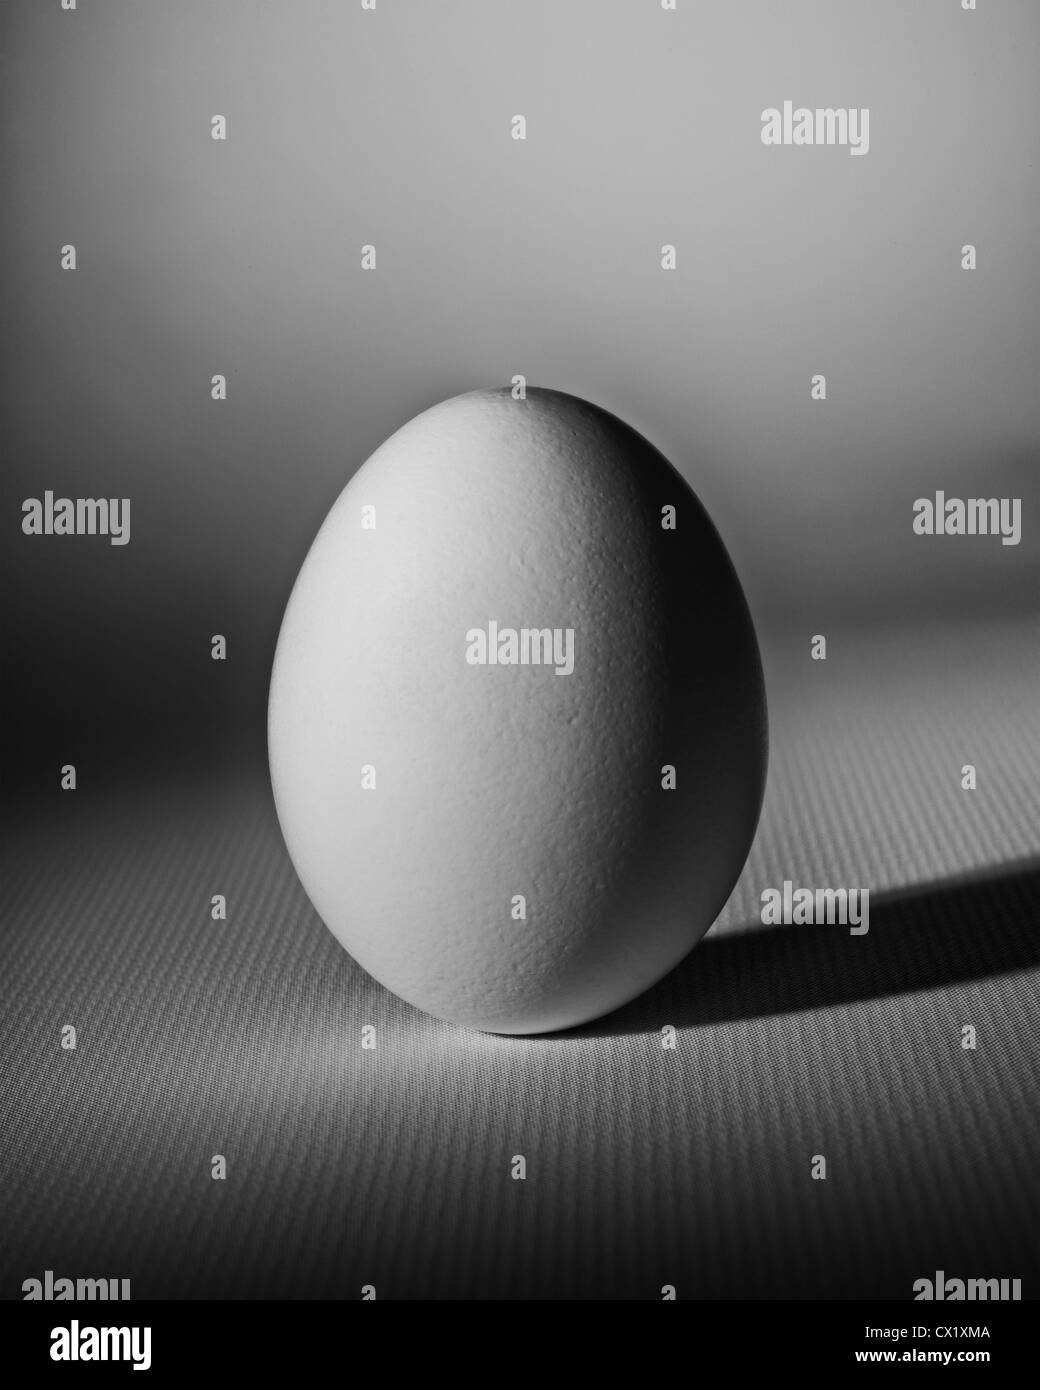 Einfachheit - strukturierte ein weißes Ei Fotografien auf einer weißen Fläche. Stockfoto